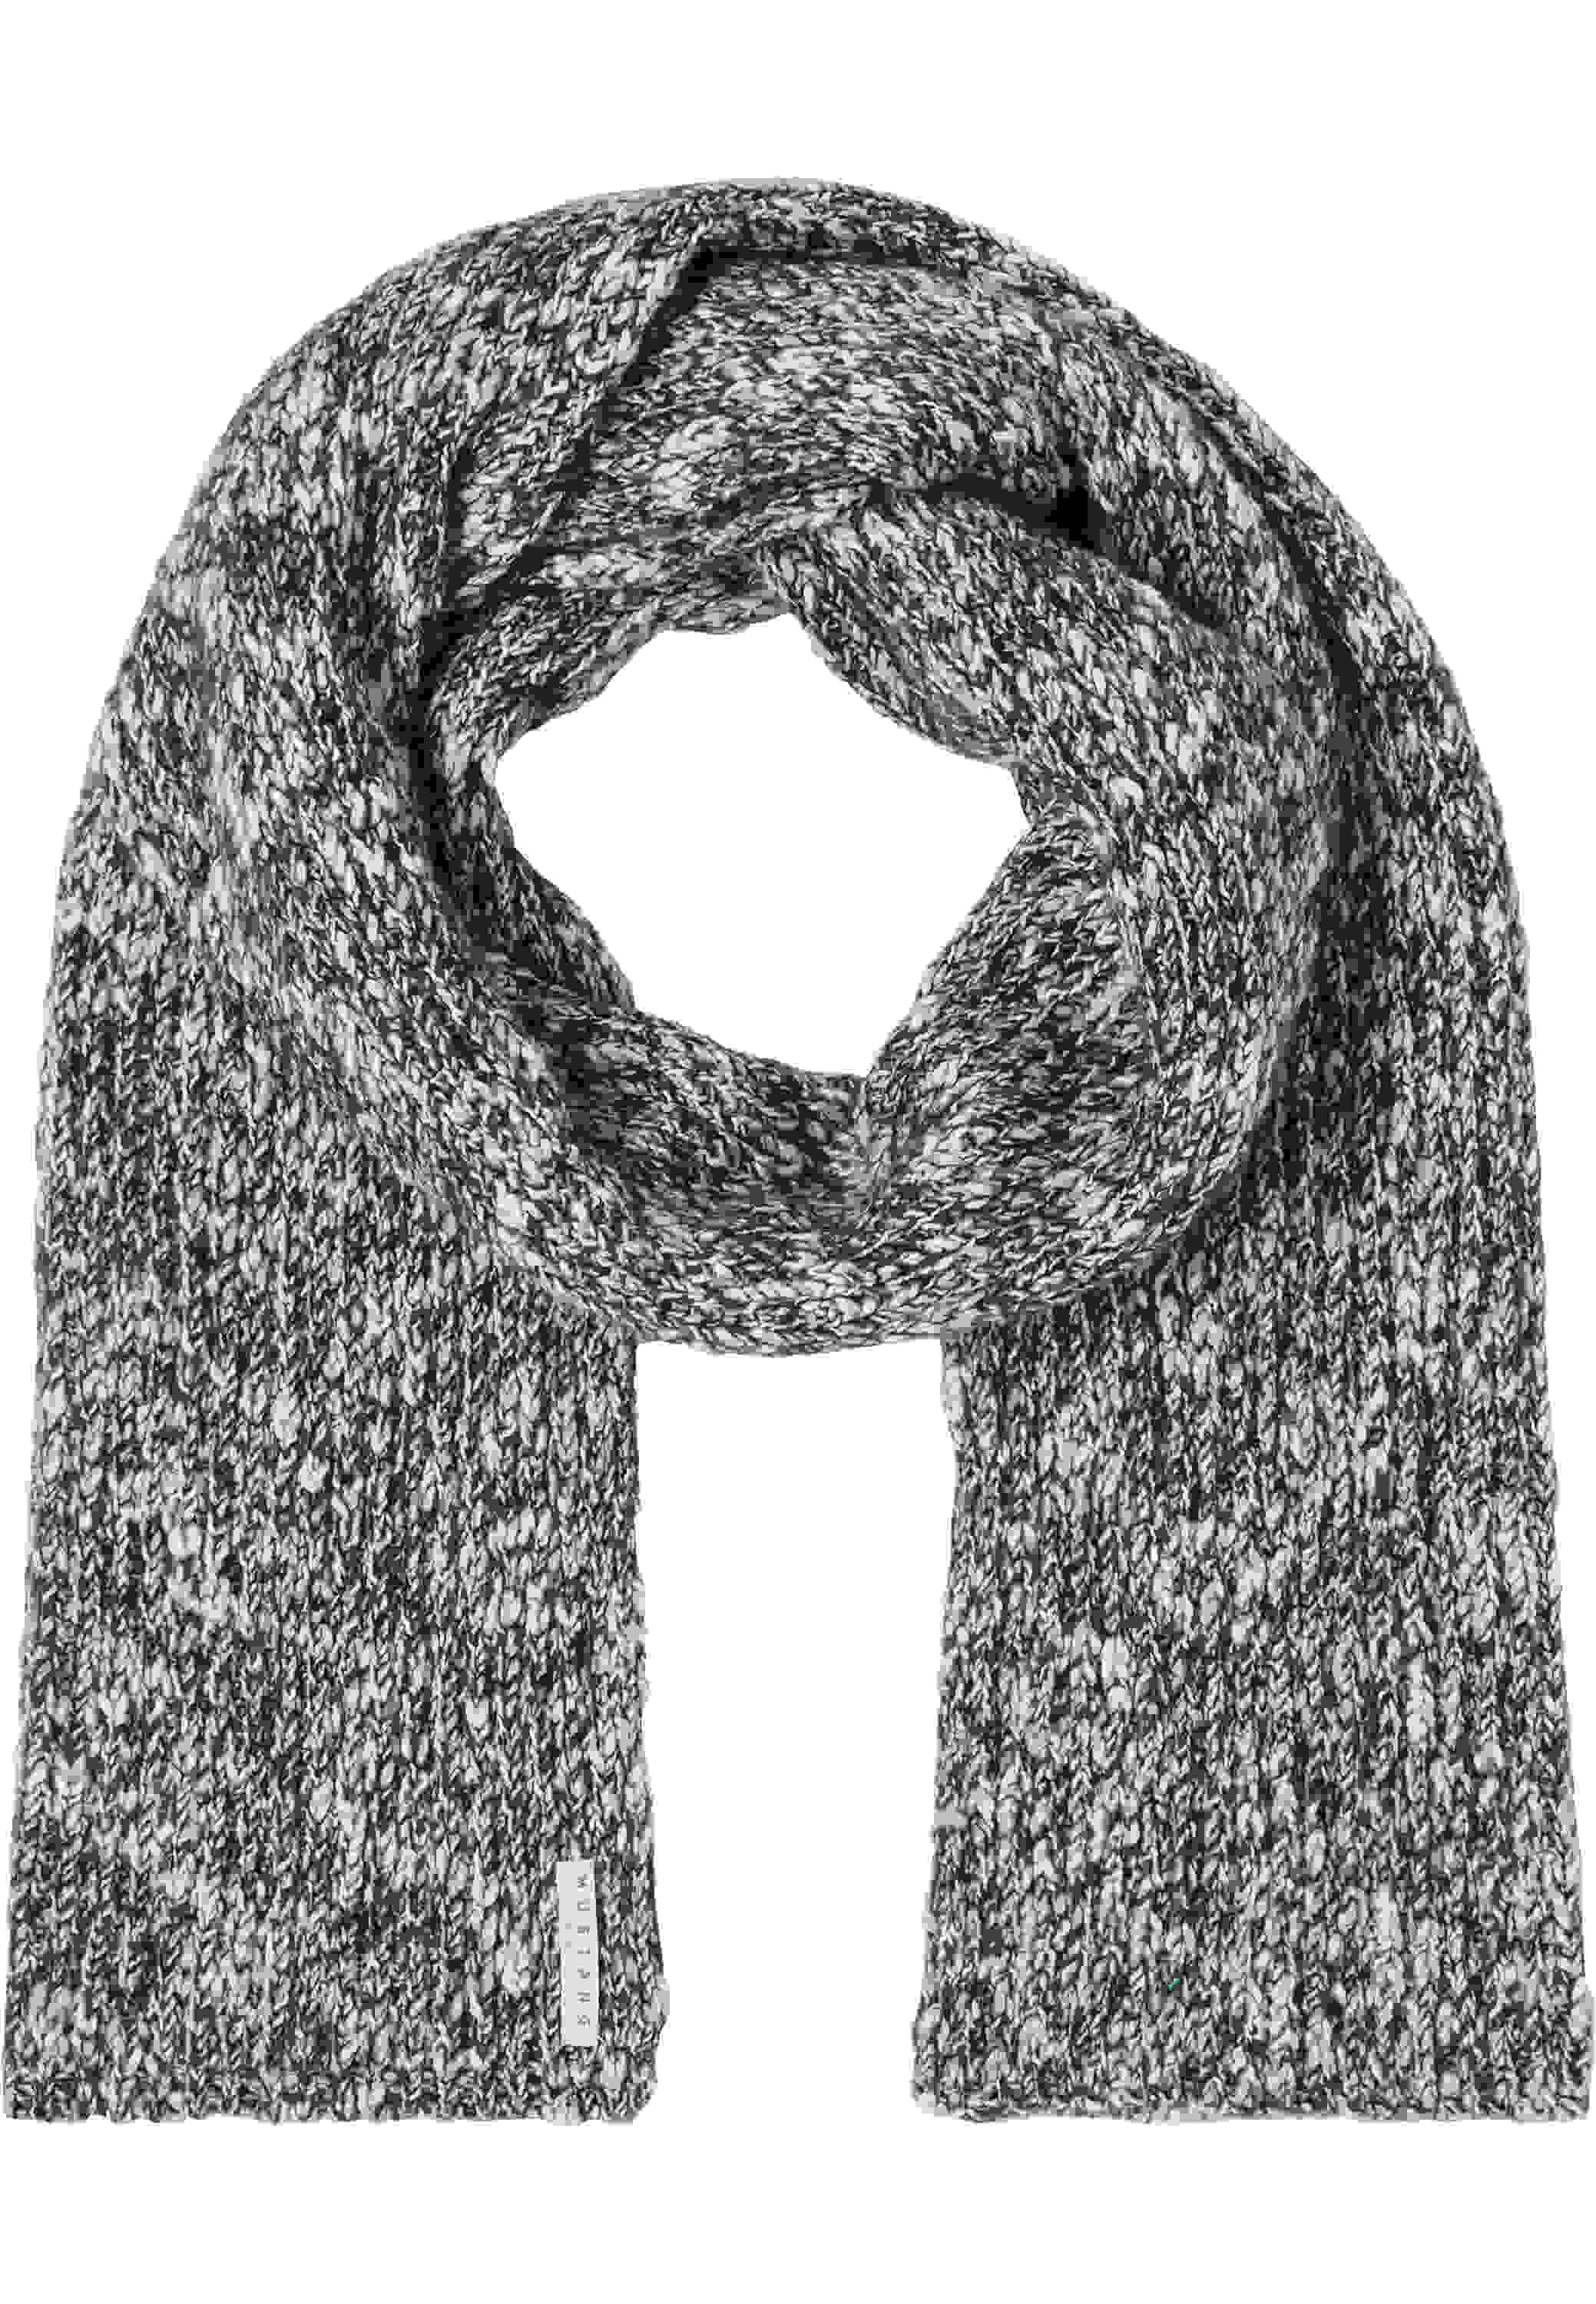 Zu niedrigen Preisen Schal aus melierter Rippenstrick-Design kaufen im bei Mustang bei jetzt Baumwolle